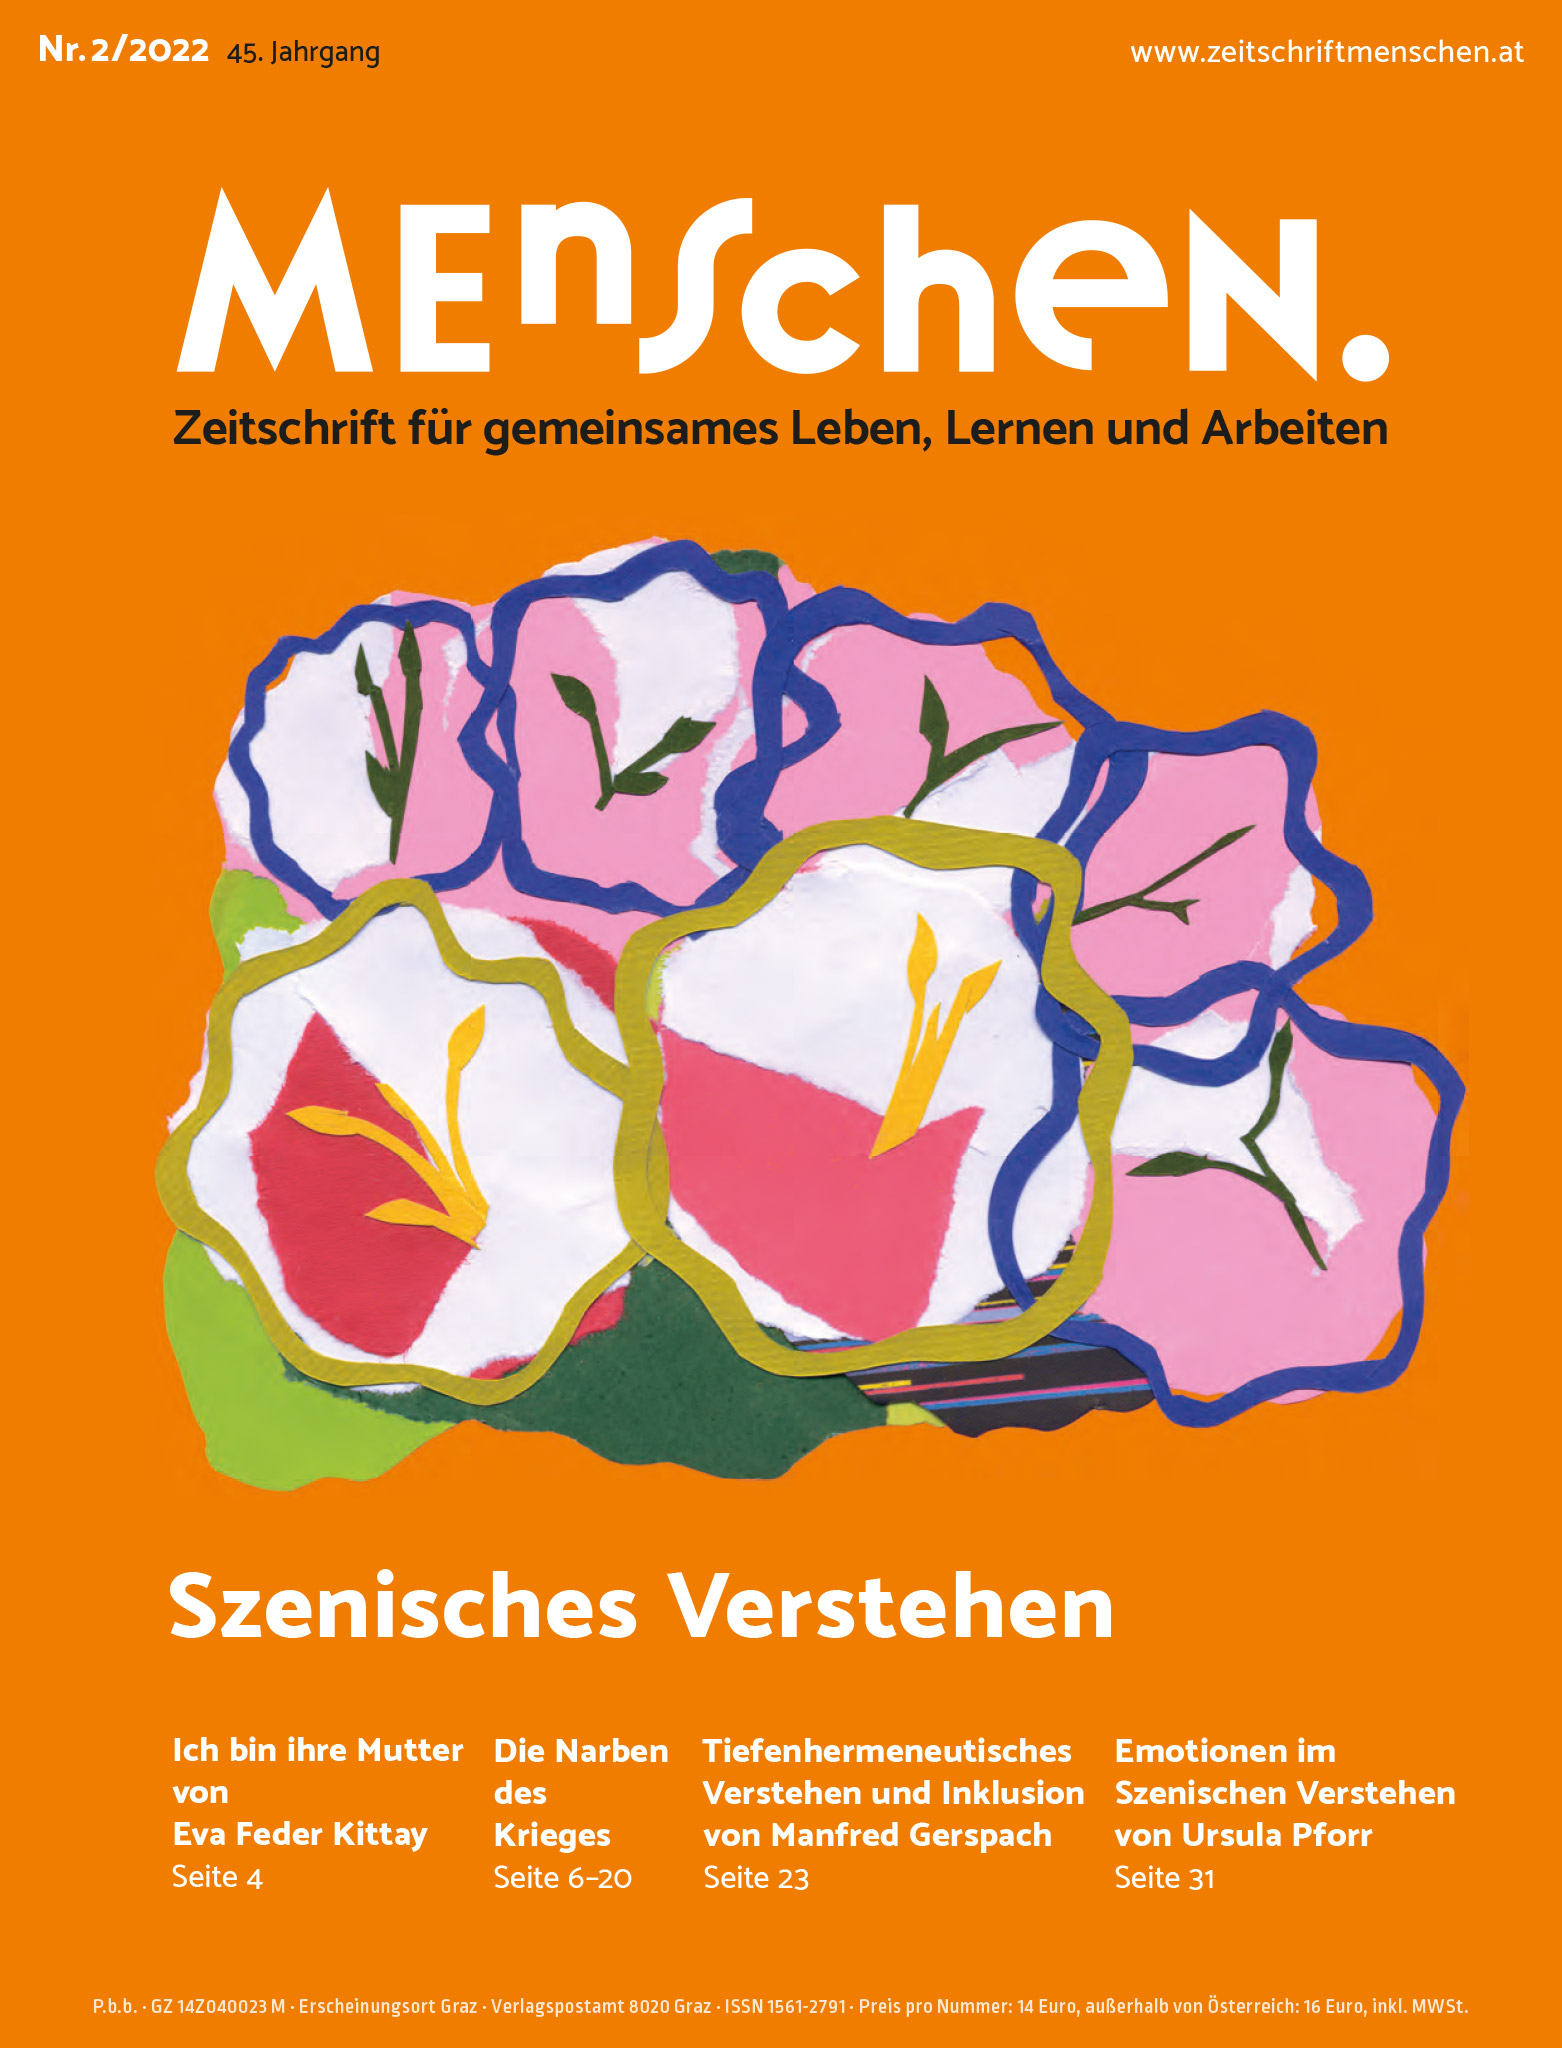 Titelbild Ausgabe 2/2022 "Szenisches Verstehen"